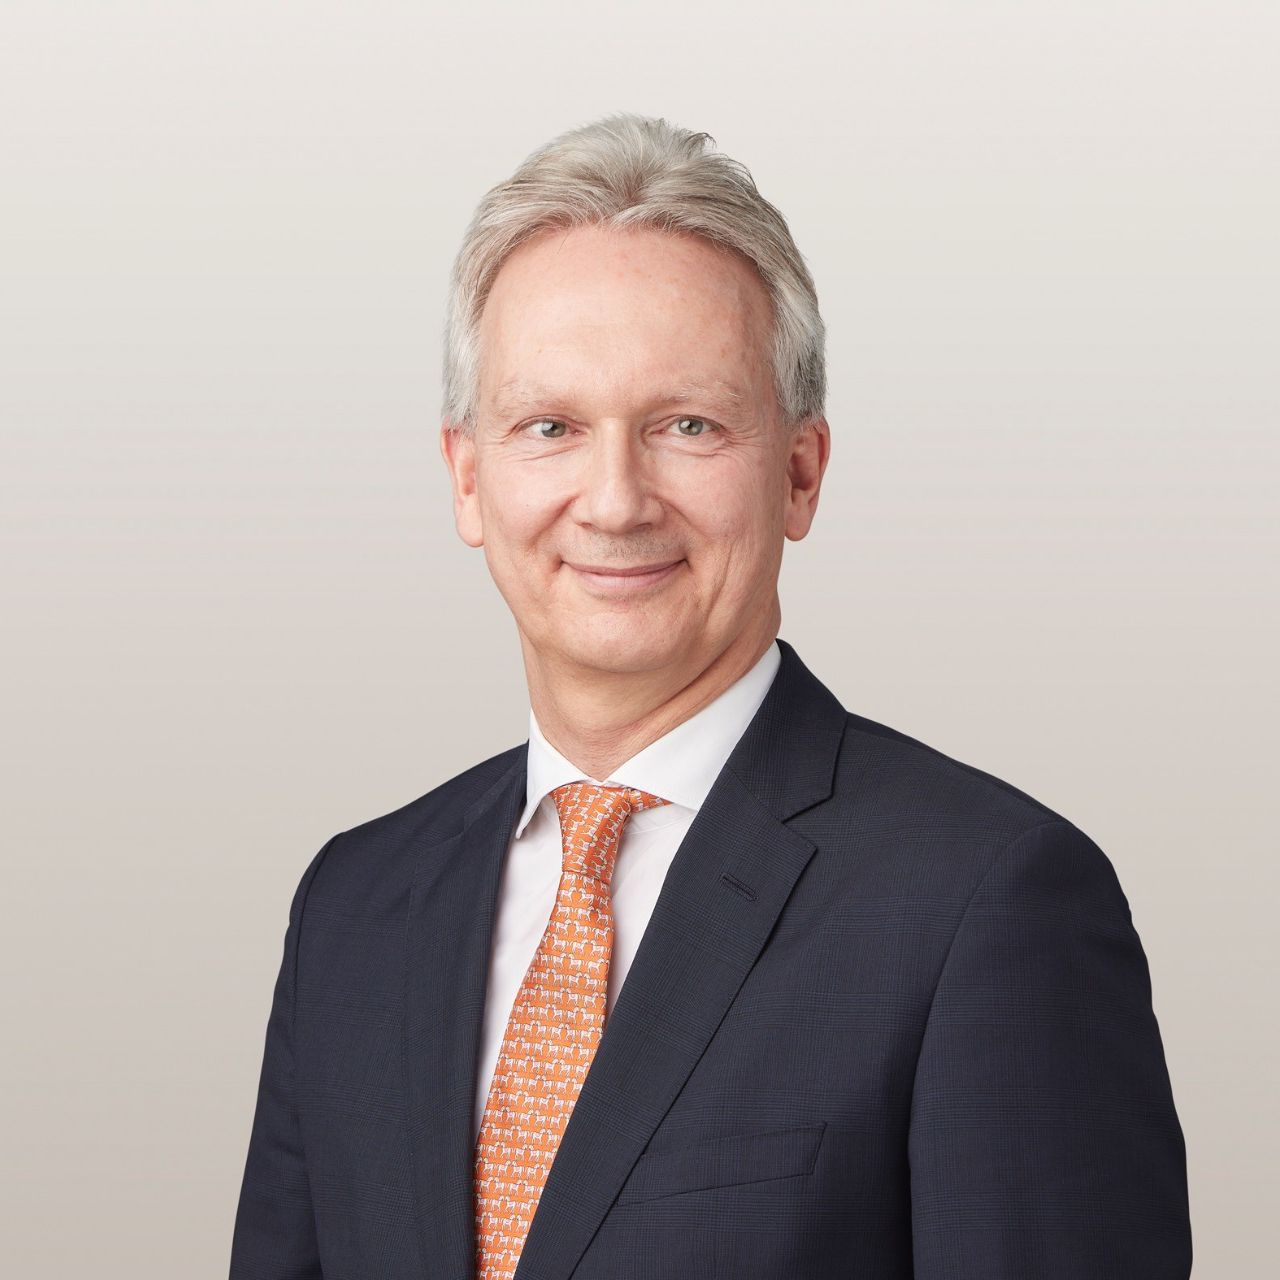 Christopher Hönig